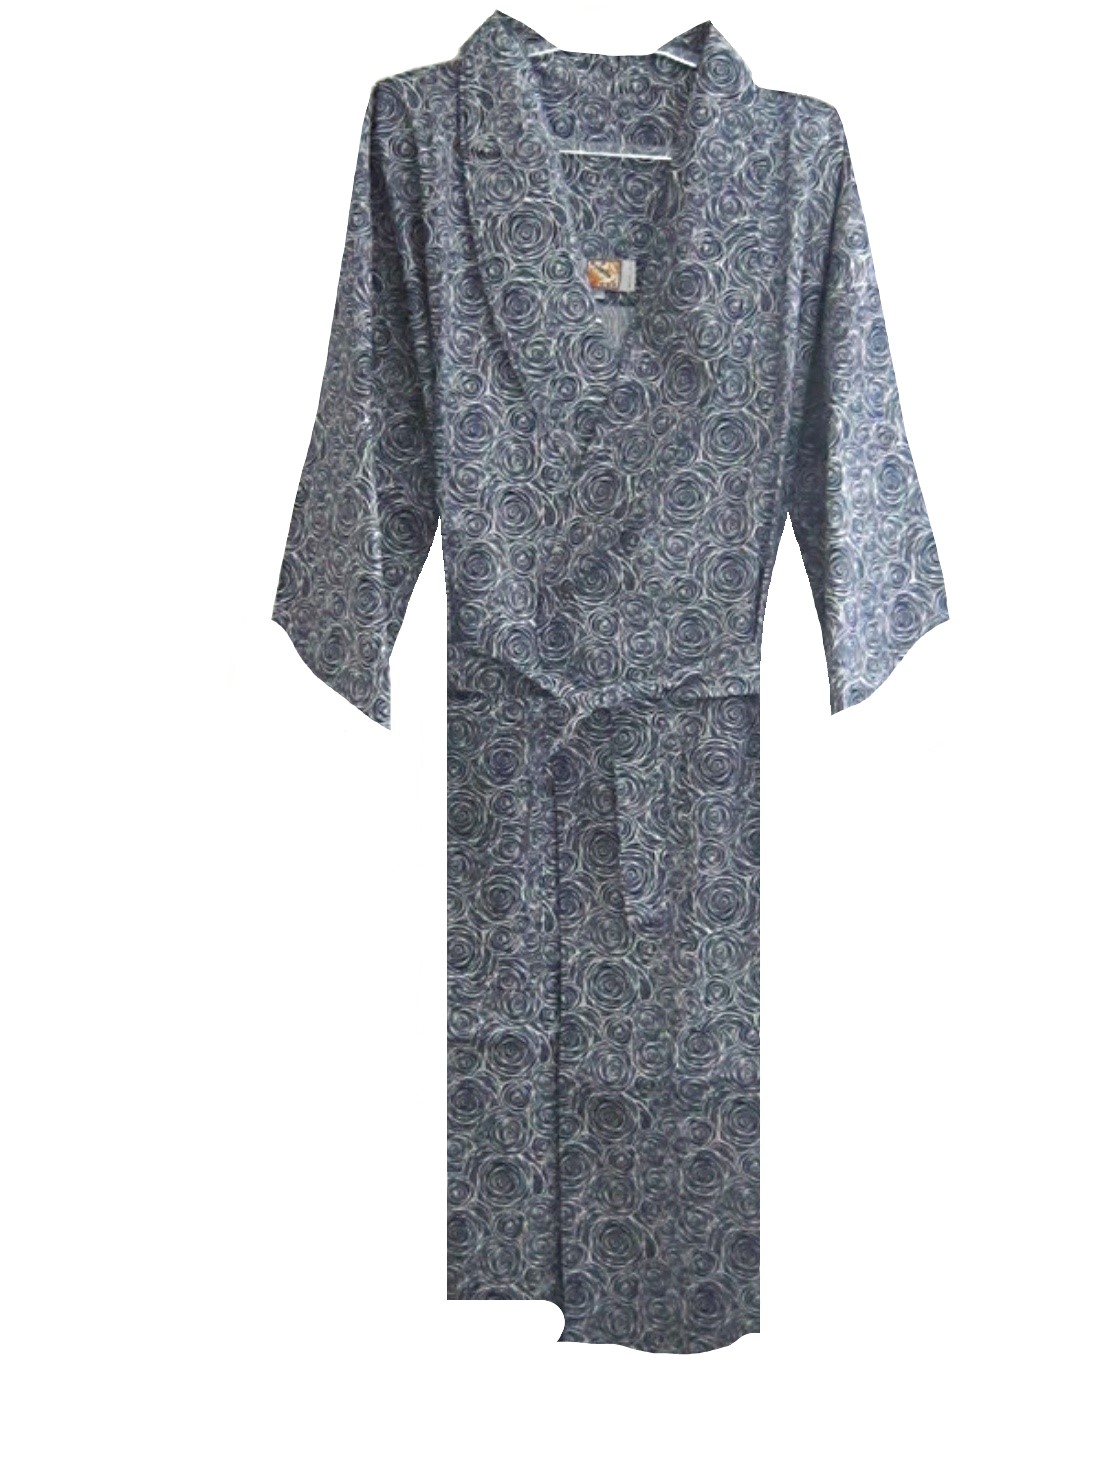 เสื้อคลุมนอน หญิง เสื้อคลุม ทับ ชุดนอน ผู้หญิง เสื้อคลุมชุดนอน ผู้ญิง 100%  ฝ้าย ไซต์ ผญ 4XL ขนาด 4X ใหญ่ ผ้าฝ้าย น้ำเงิน ใหม่ ผลิตในไทย Robe Women